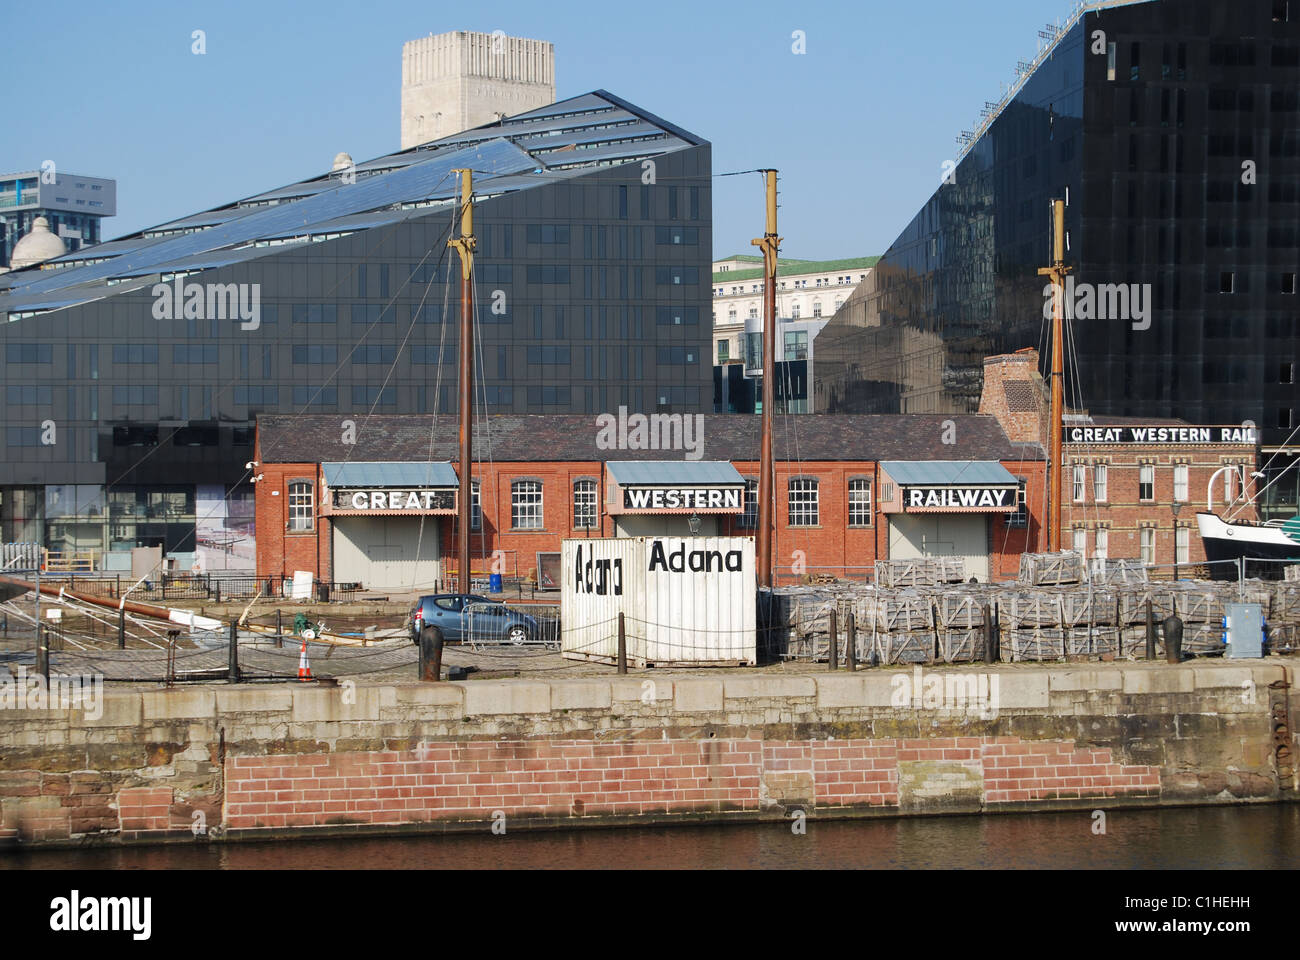 Great Western Railway, Liverpool, Albert Dock. Stock Photo